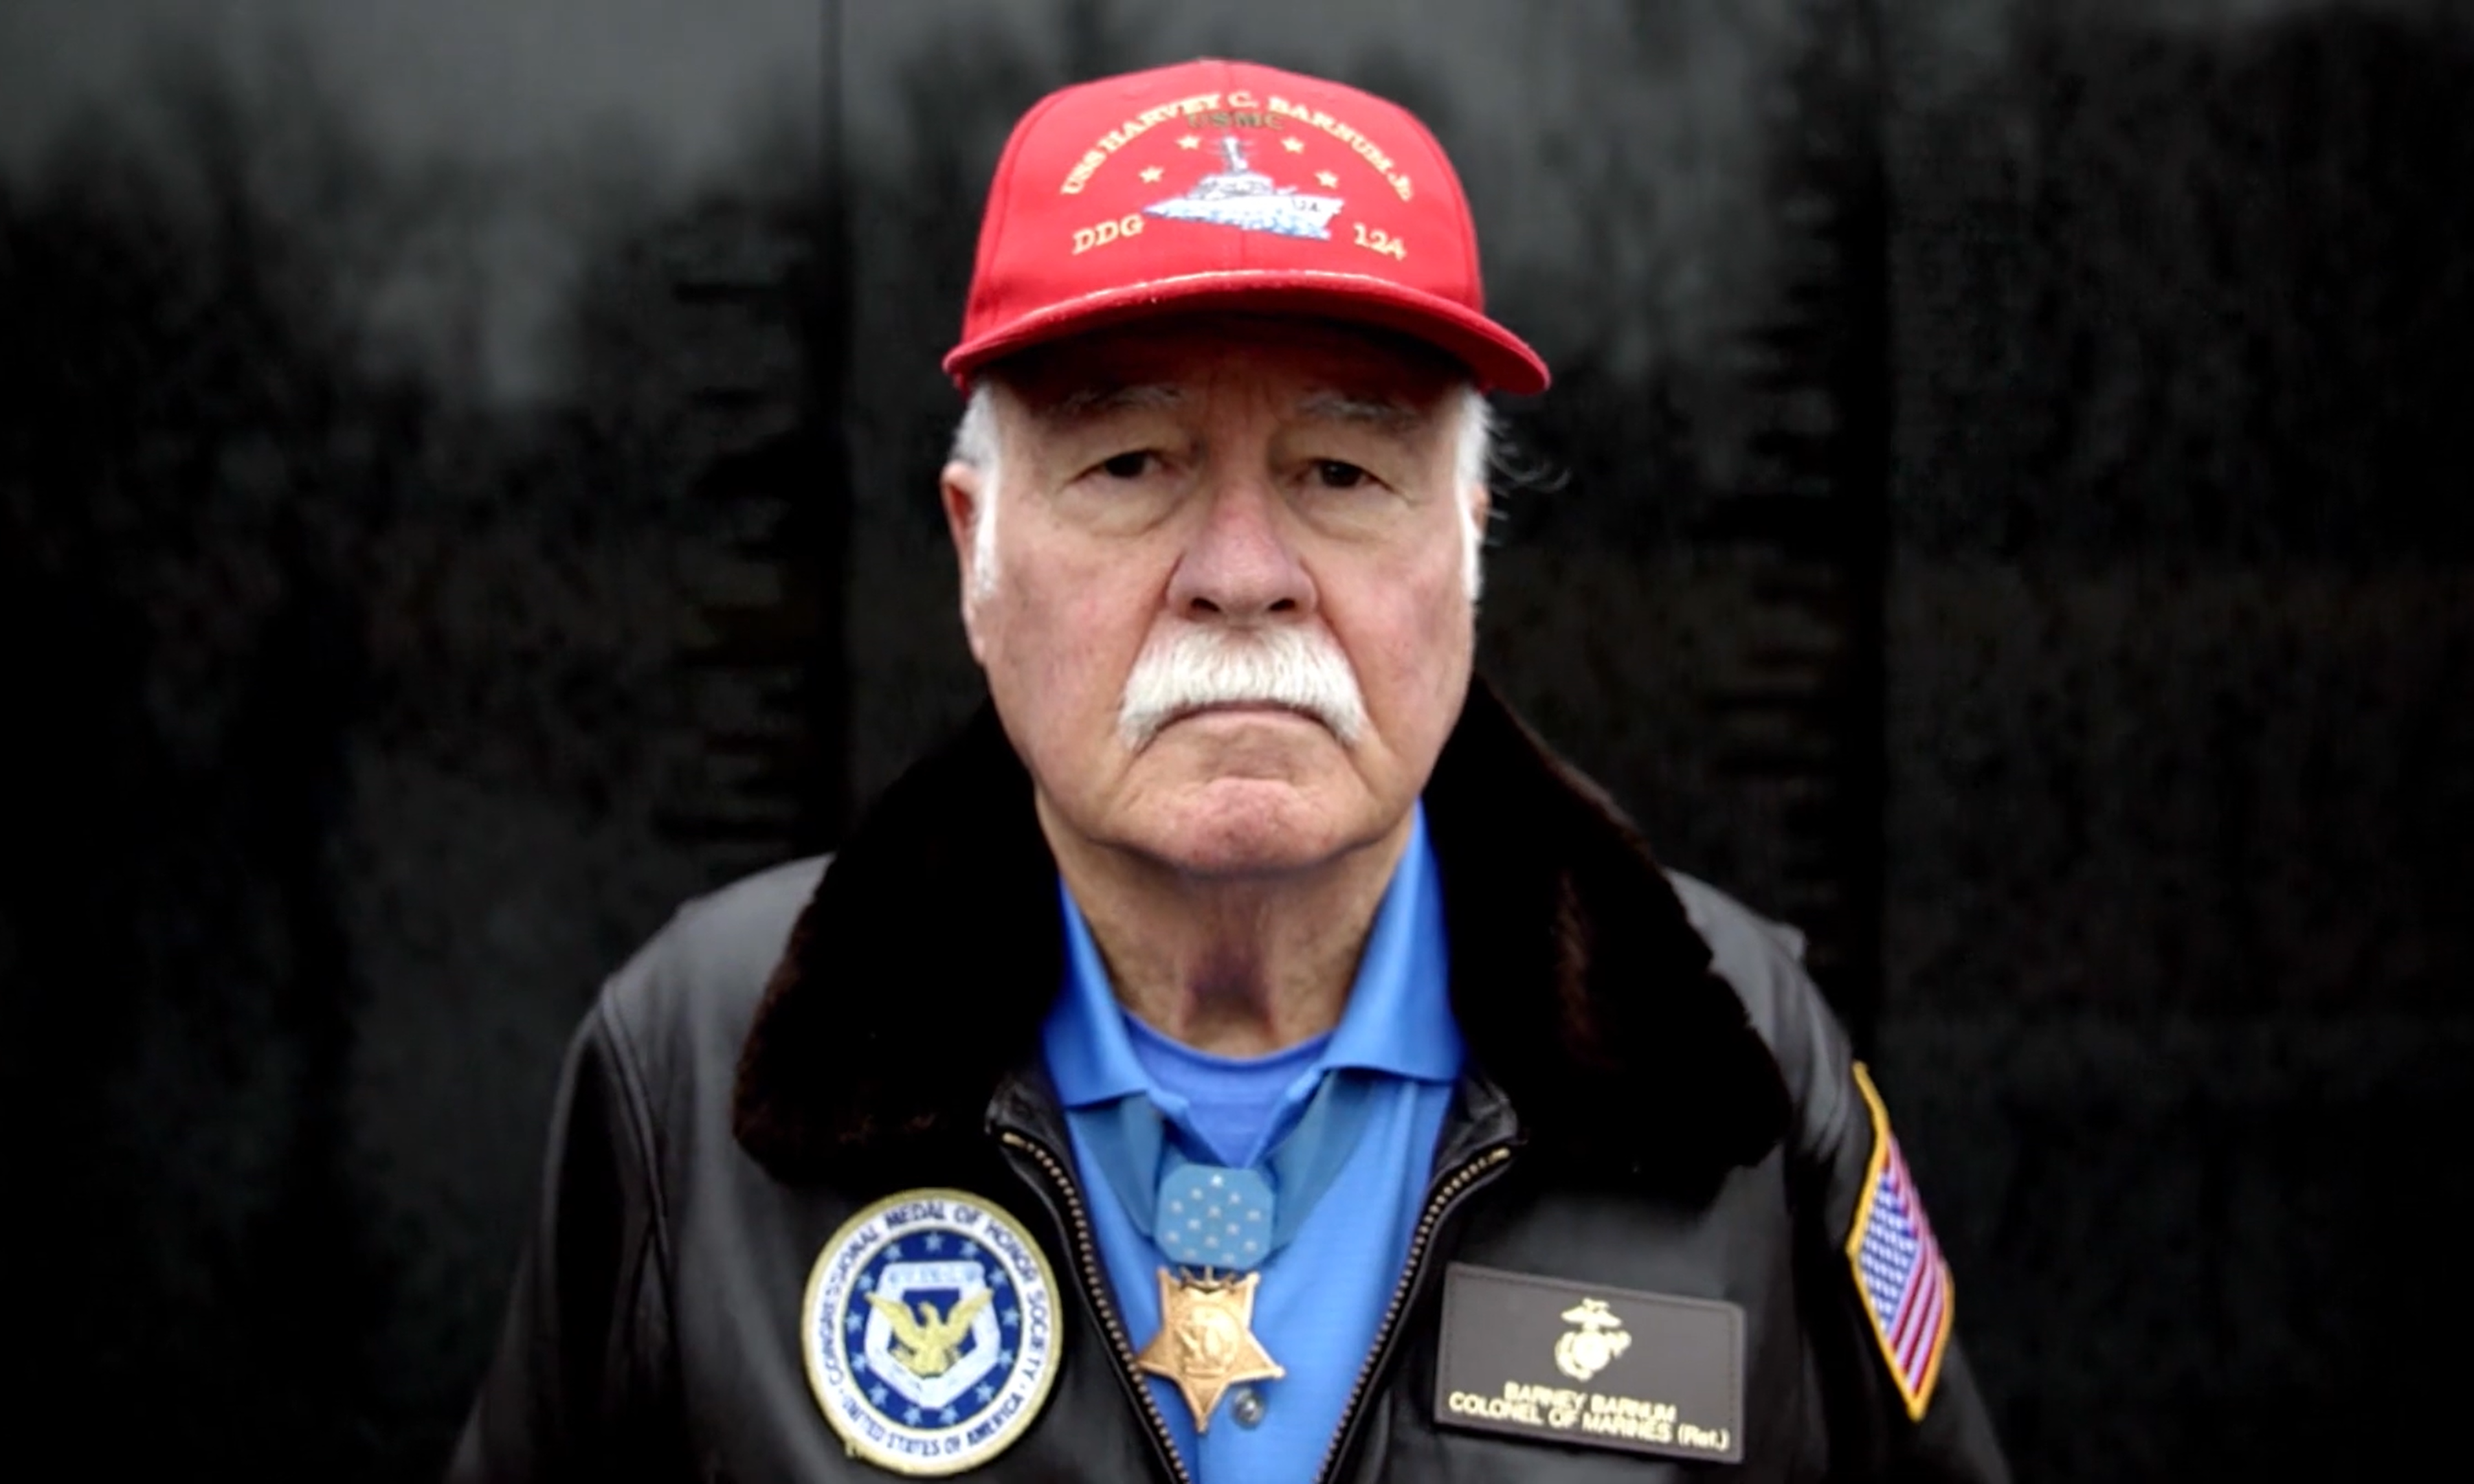 VIDEO: Vietnam Veteran reflects on war as Vietnam War Veterans Day approaches